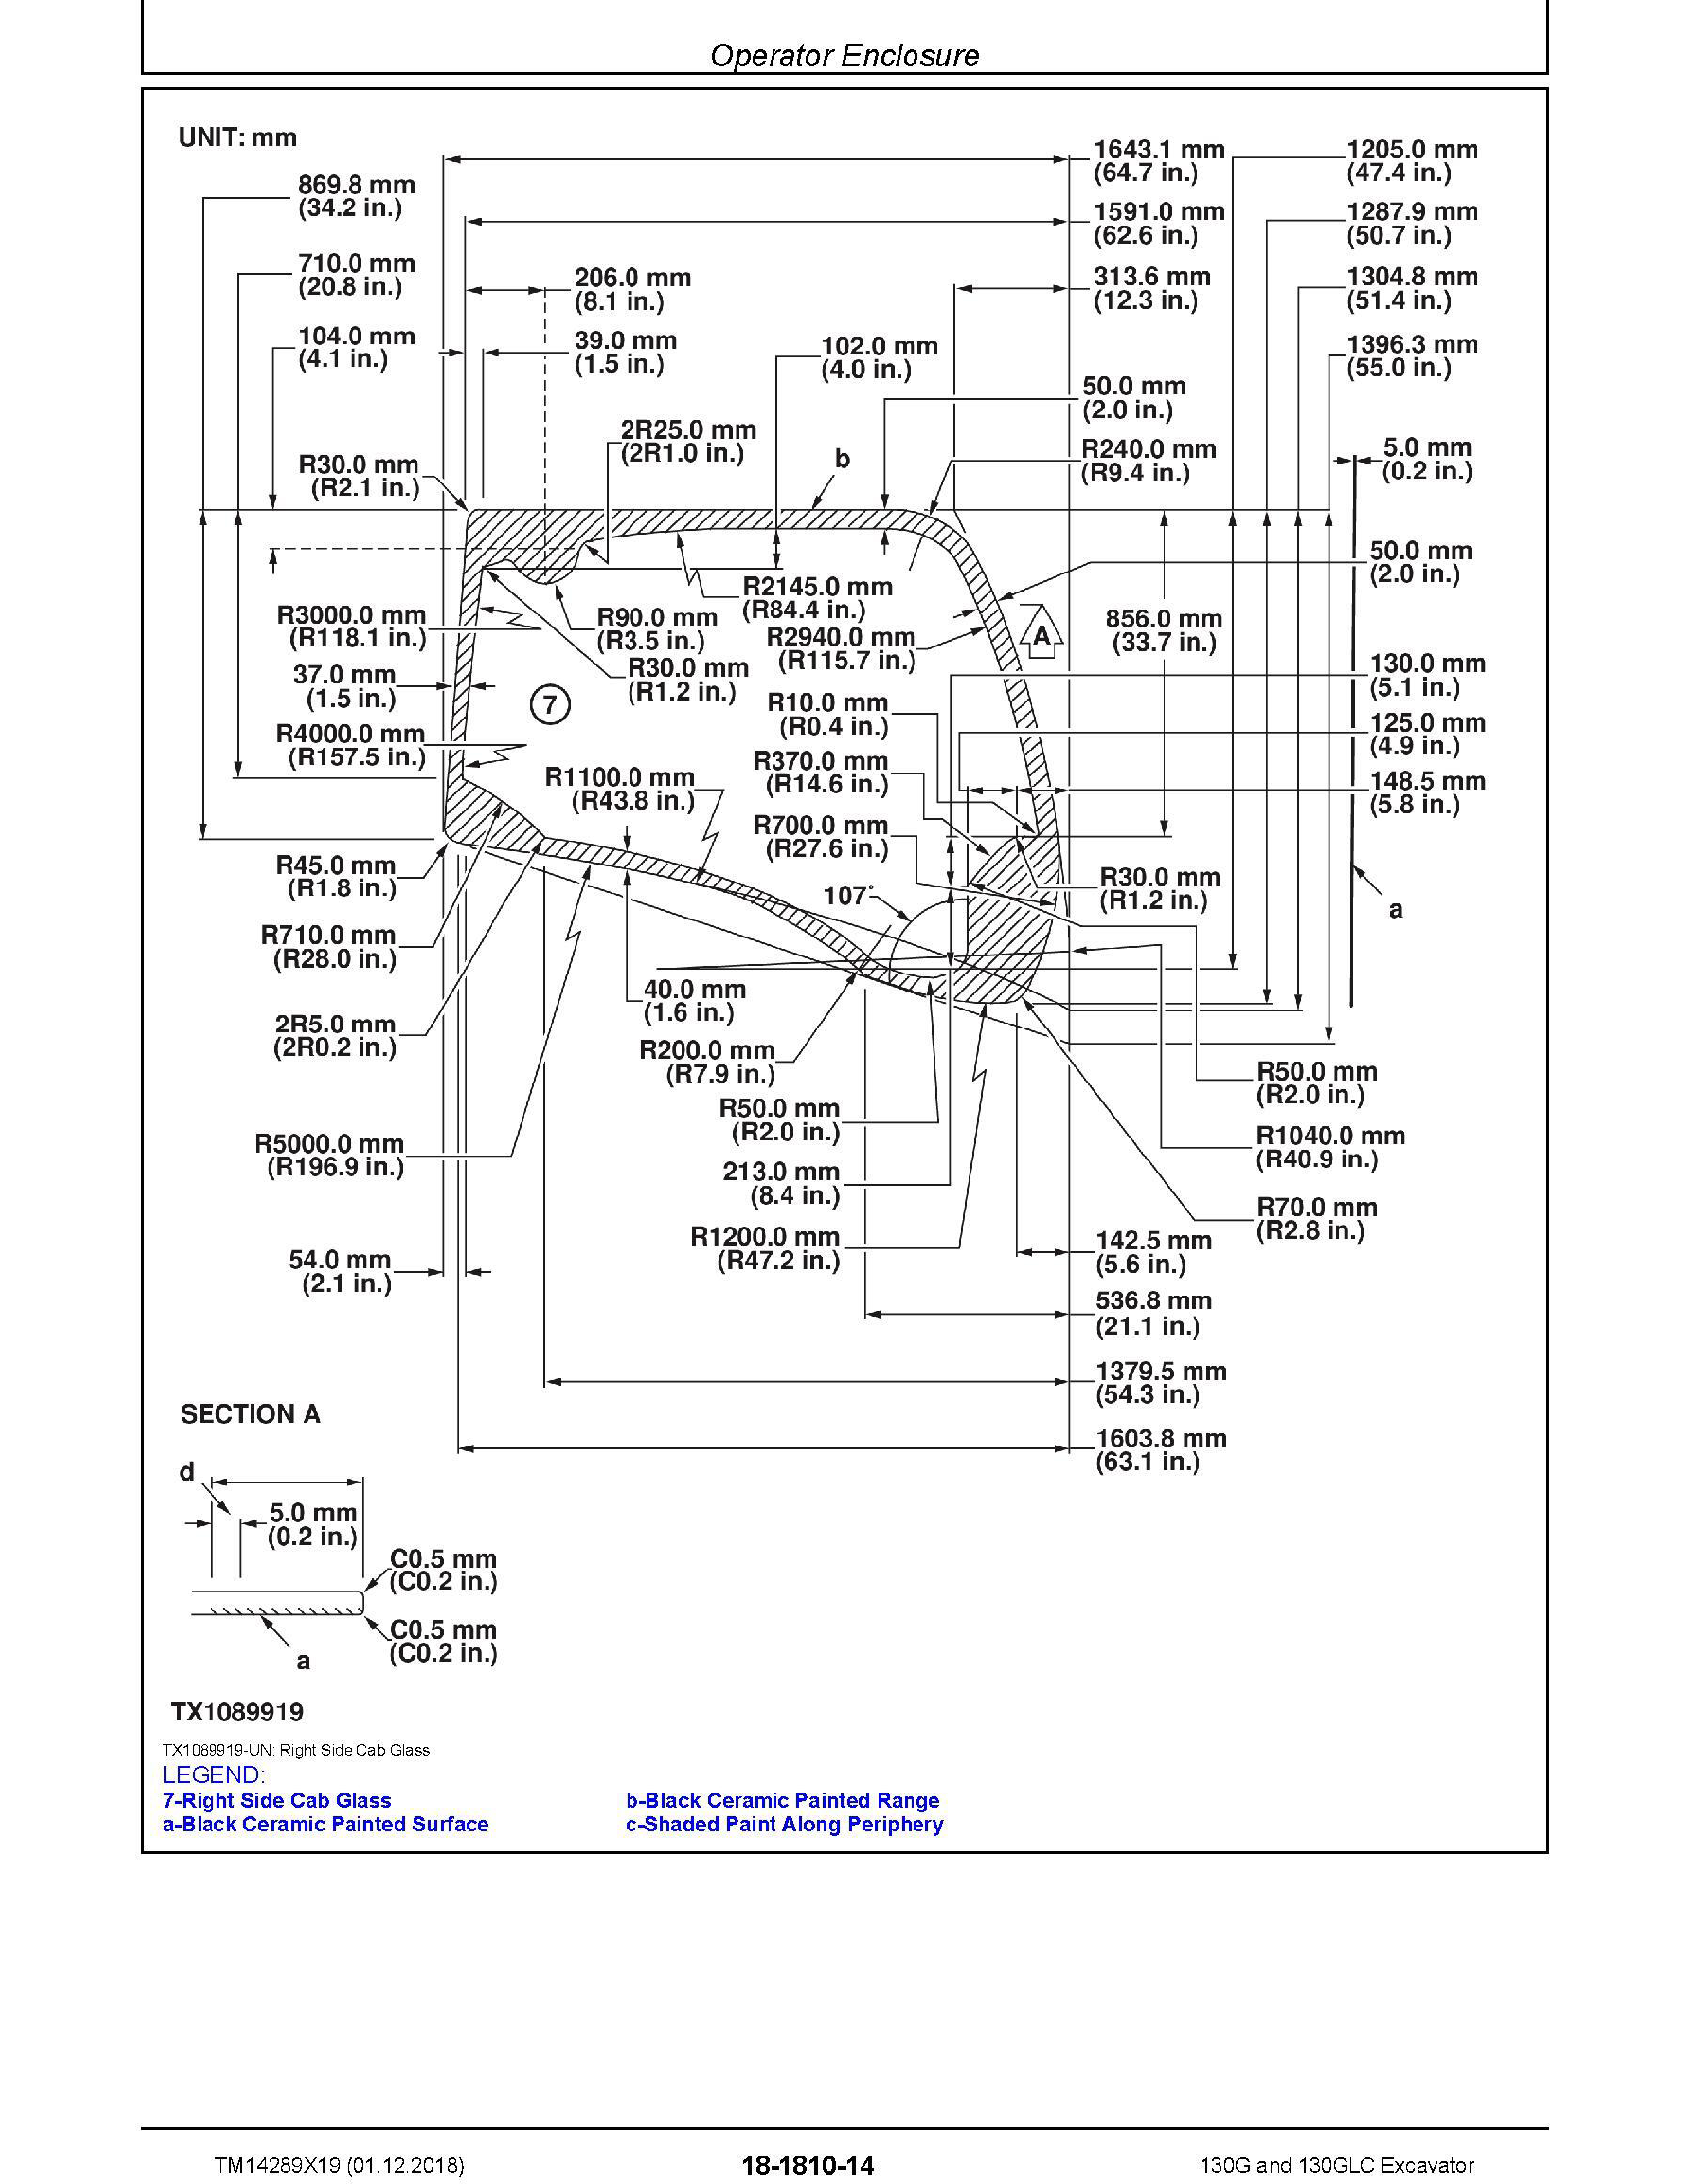 John Deere 1990 manual pdf